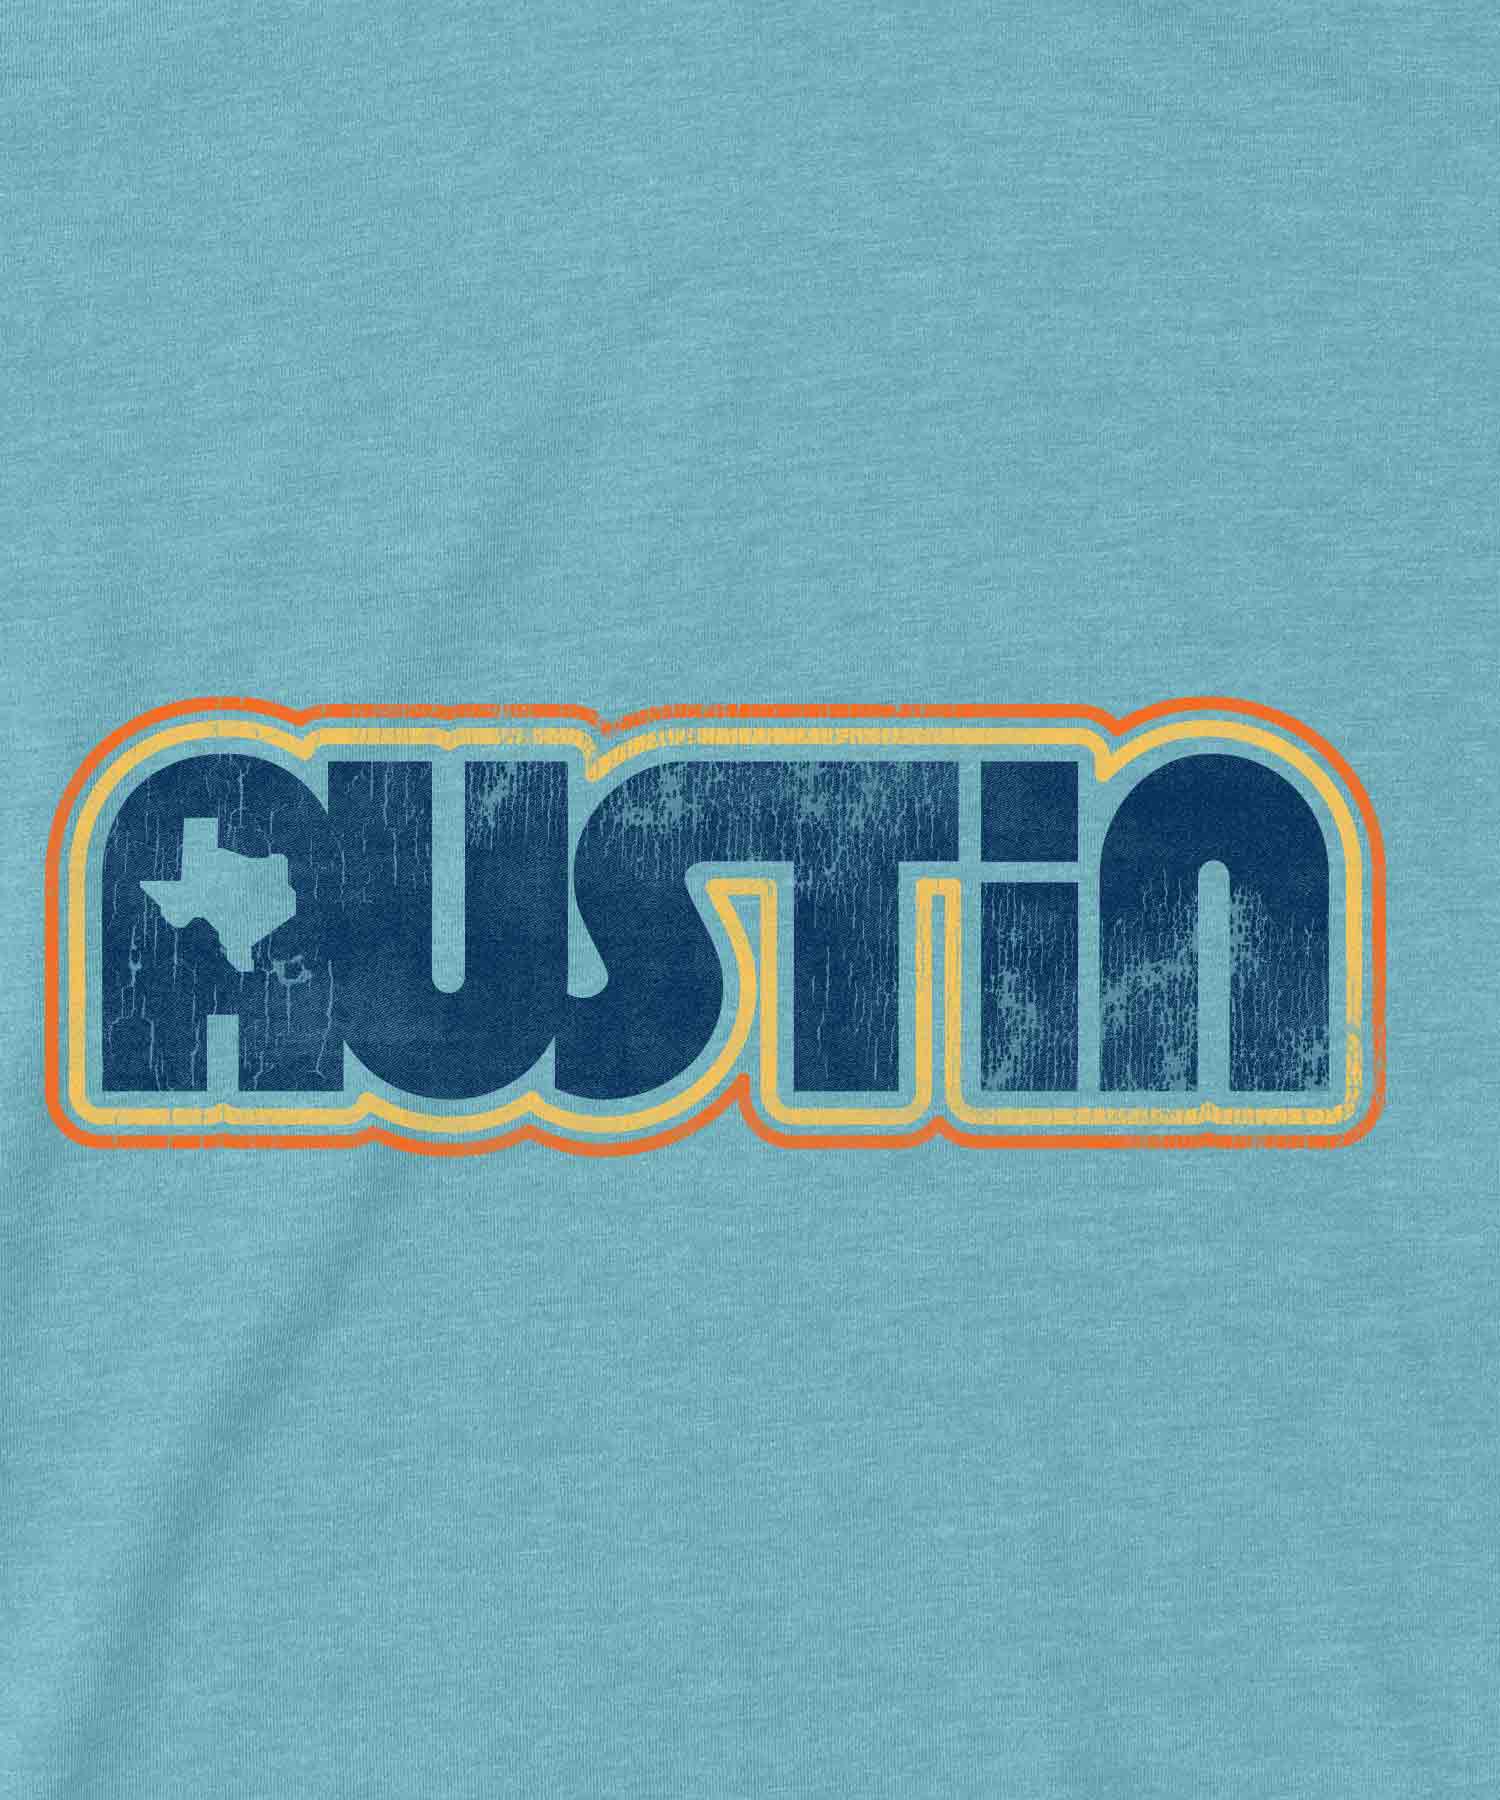 Retro Austin Design